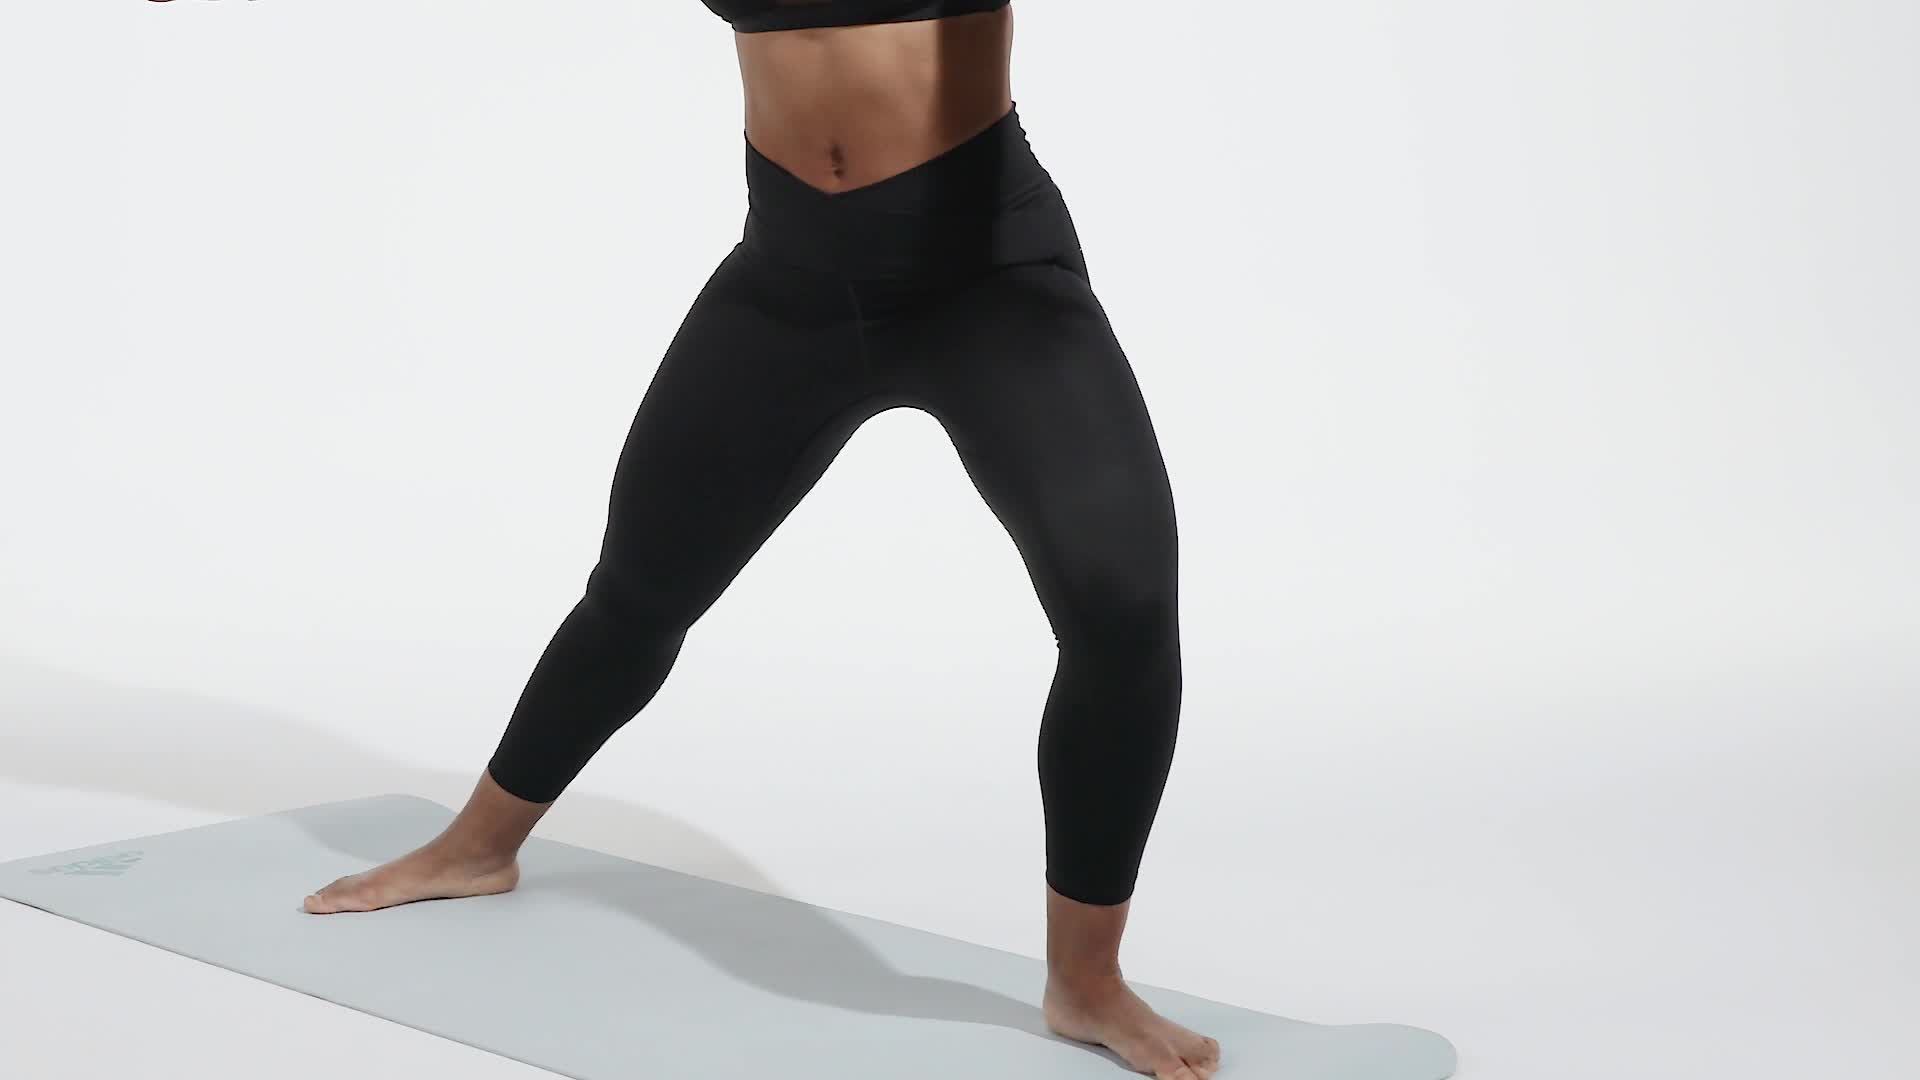  DXGroup Full Length Yoga Leggings Women's Seamless